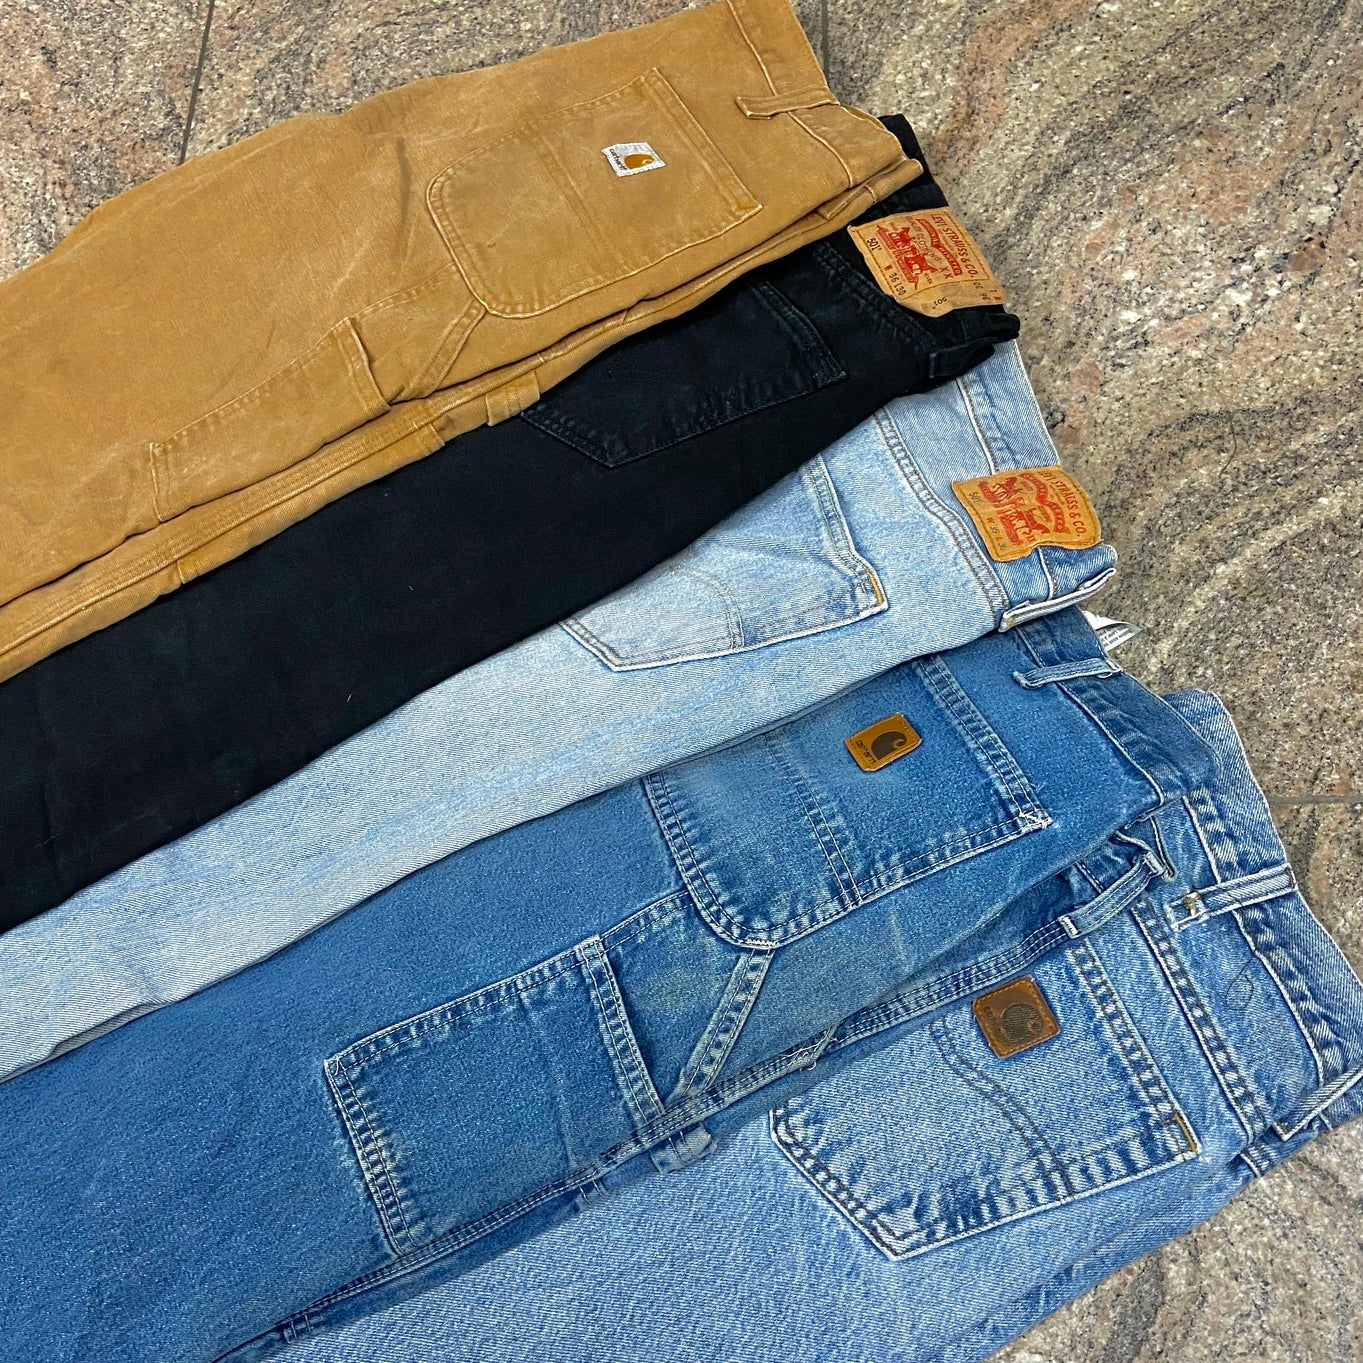 Zu sehen sind 5 verschiedene Jeans Hosen. Dabei vertreten sind Marken wie Carhartt. Die Hosen haben unterschiedliche Farben von Denim Blau, über Beige bis zu schwarz. 